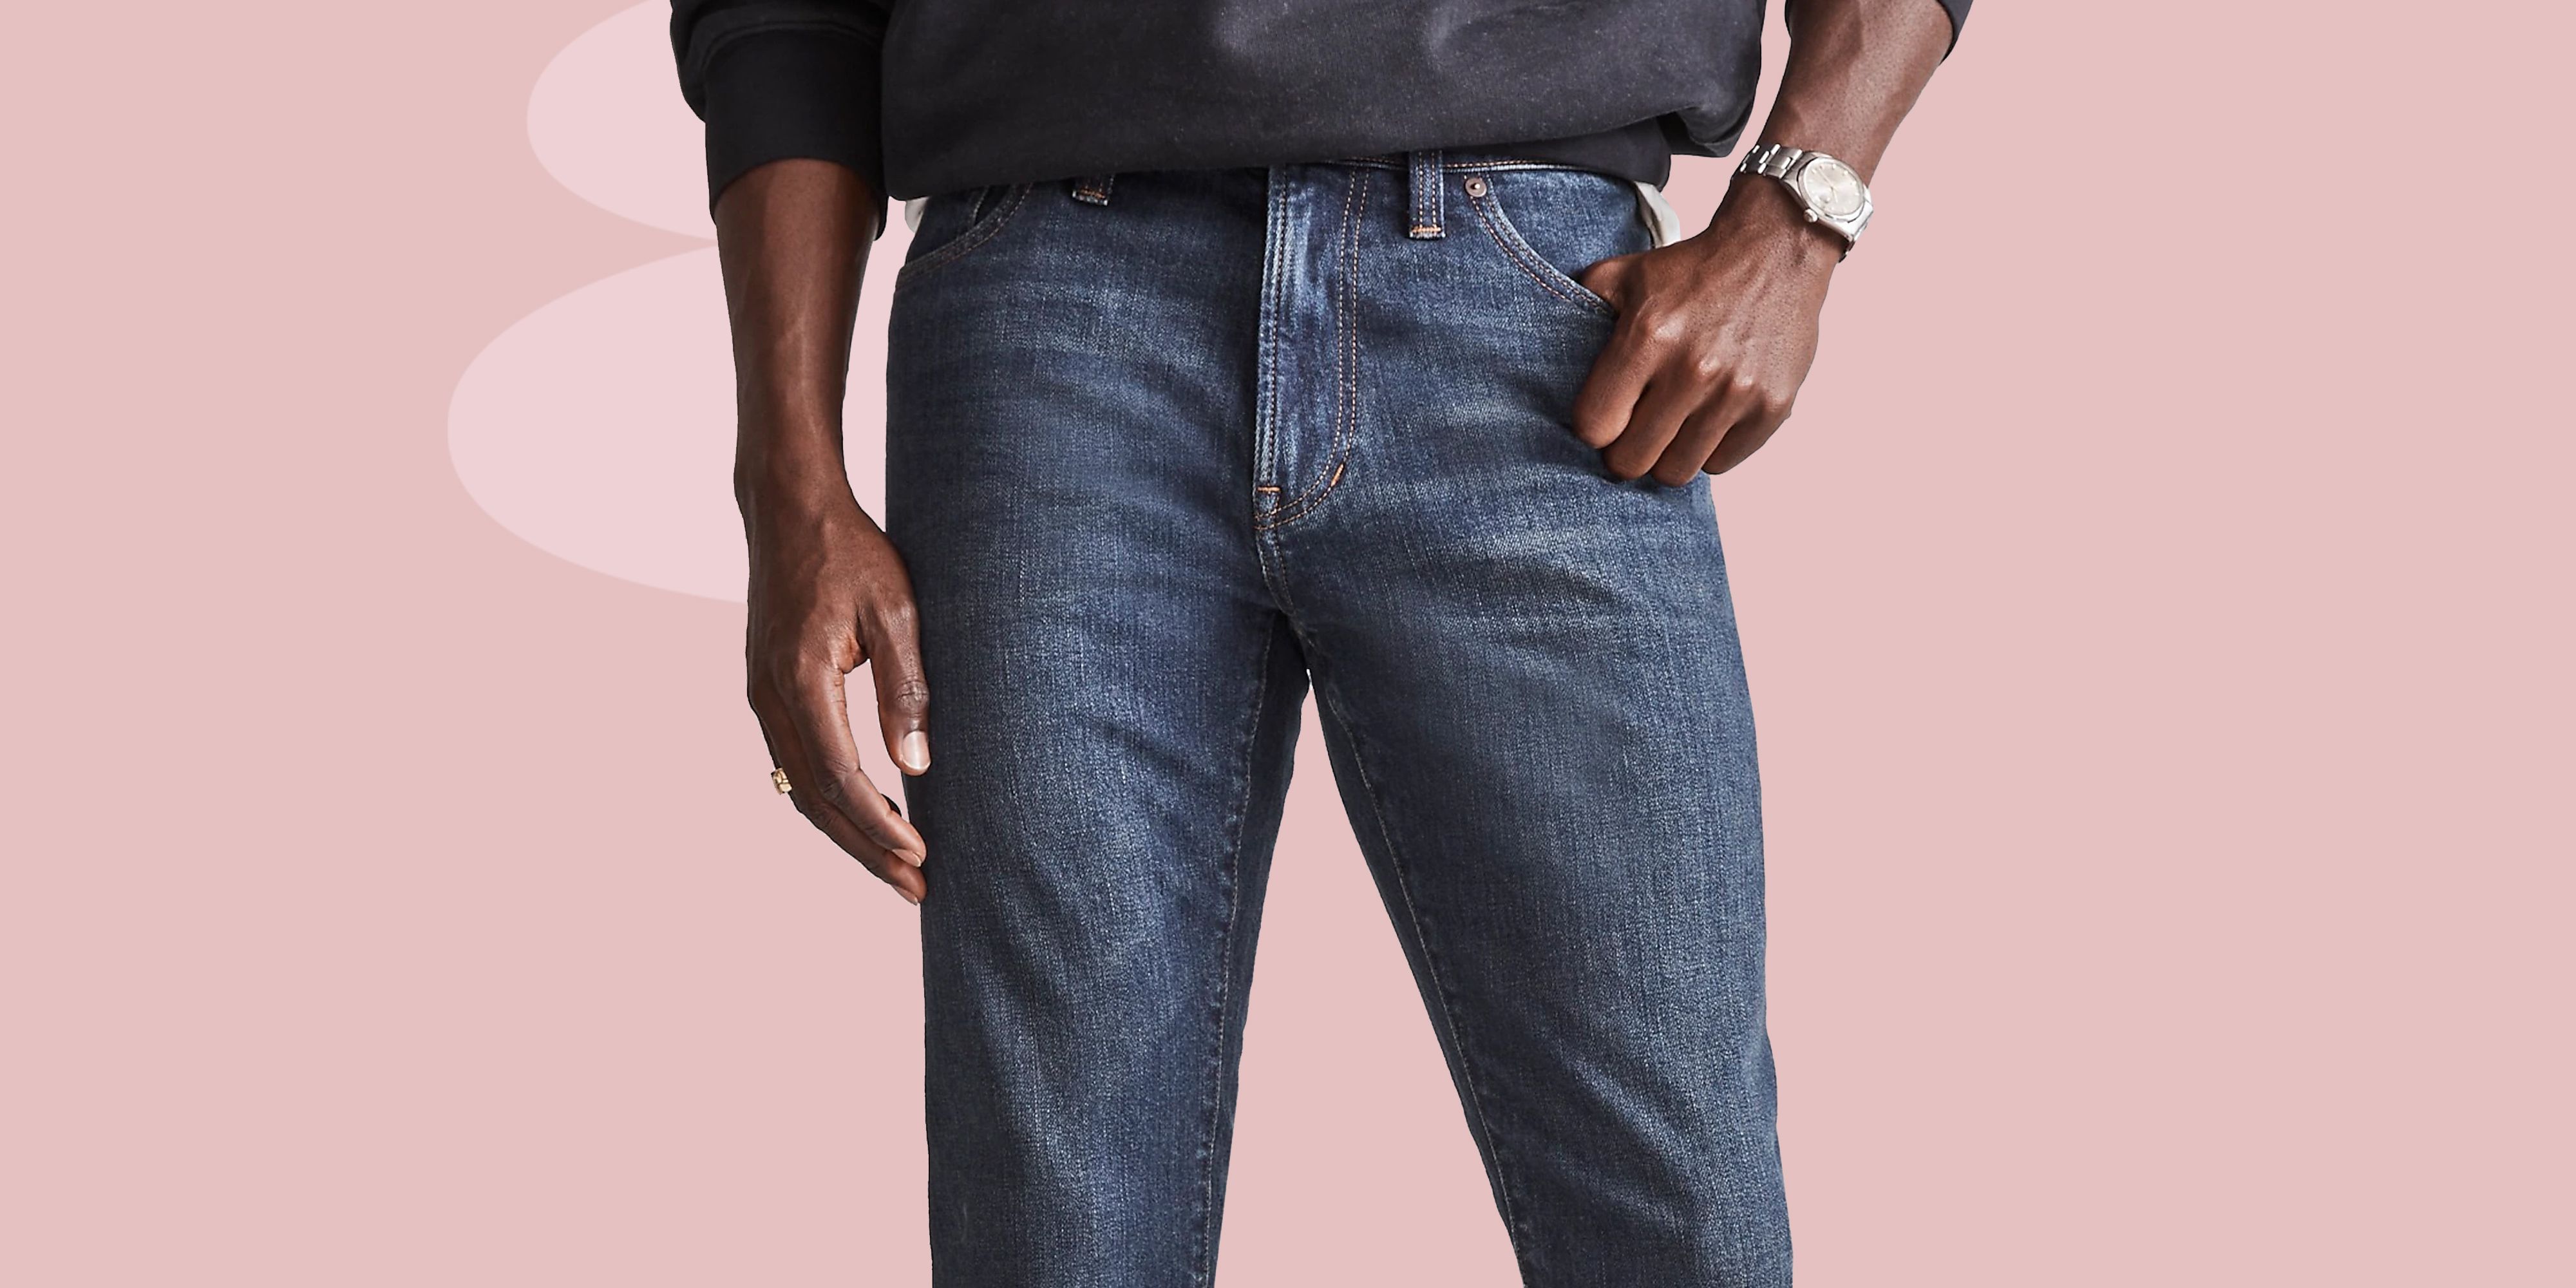 louis vuitton jeans for men - Google Search